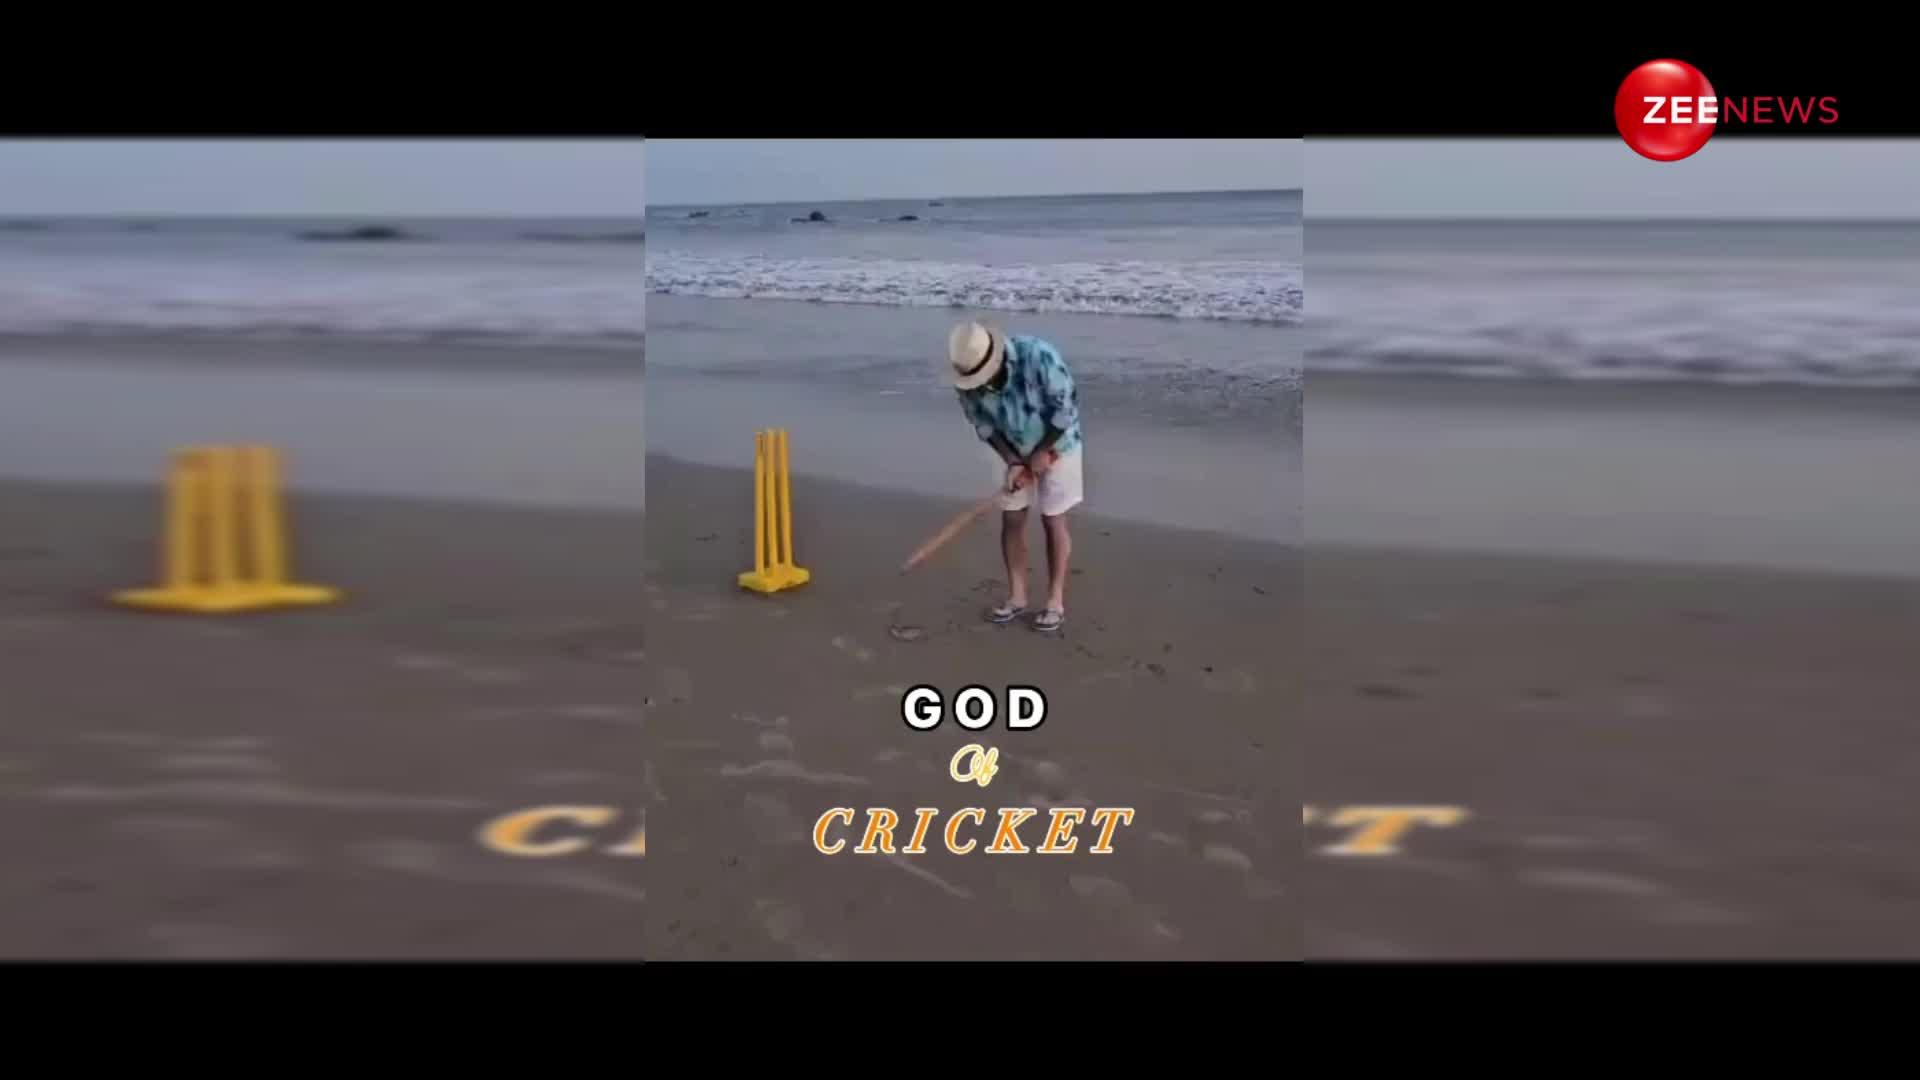 समंदर किनारे क्रिकेट खेलते नजर आए Sachin Tendulkar, वीडियो तेजी से हो रहा है वायरल